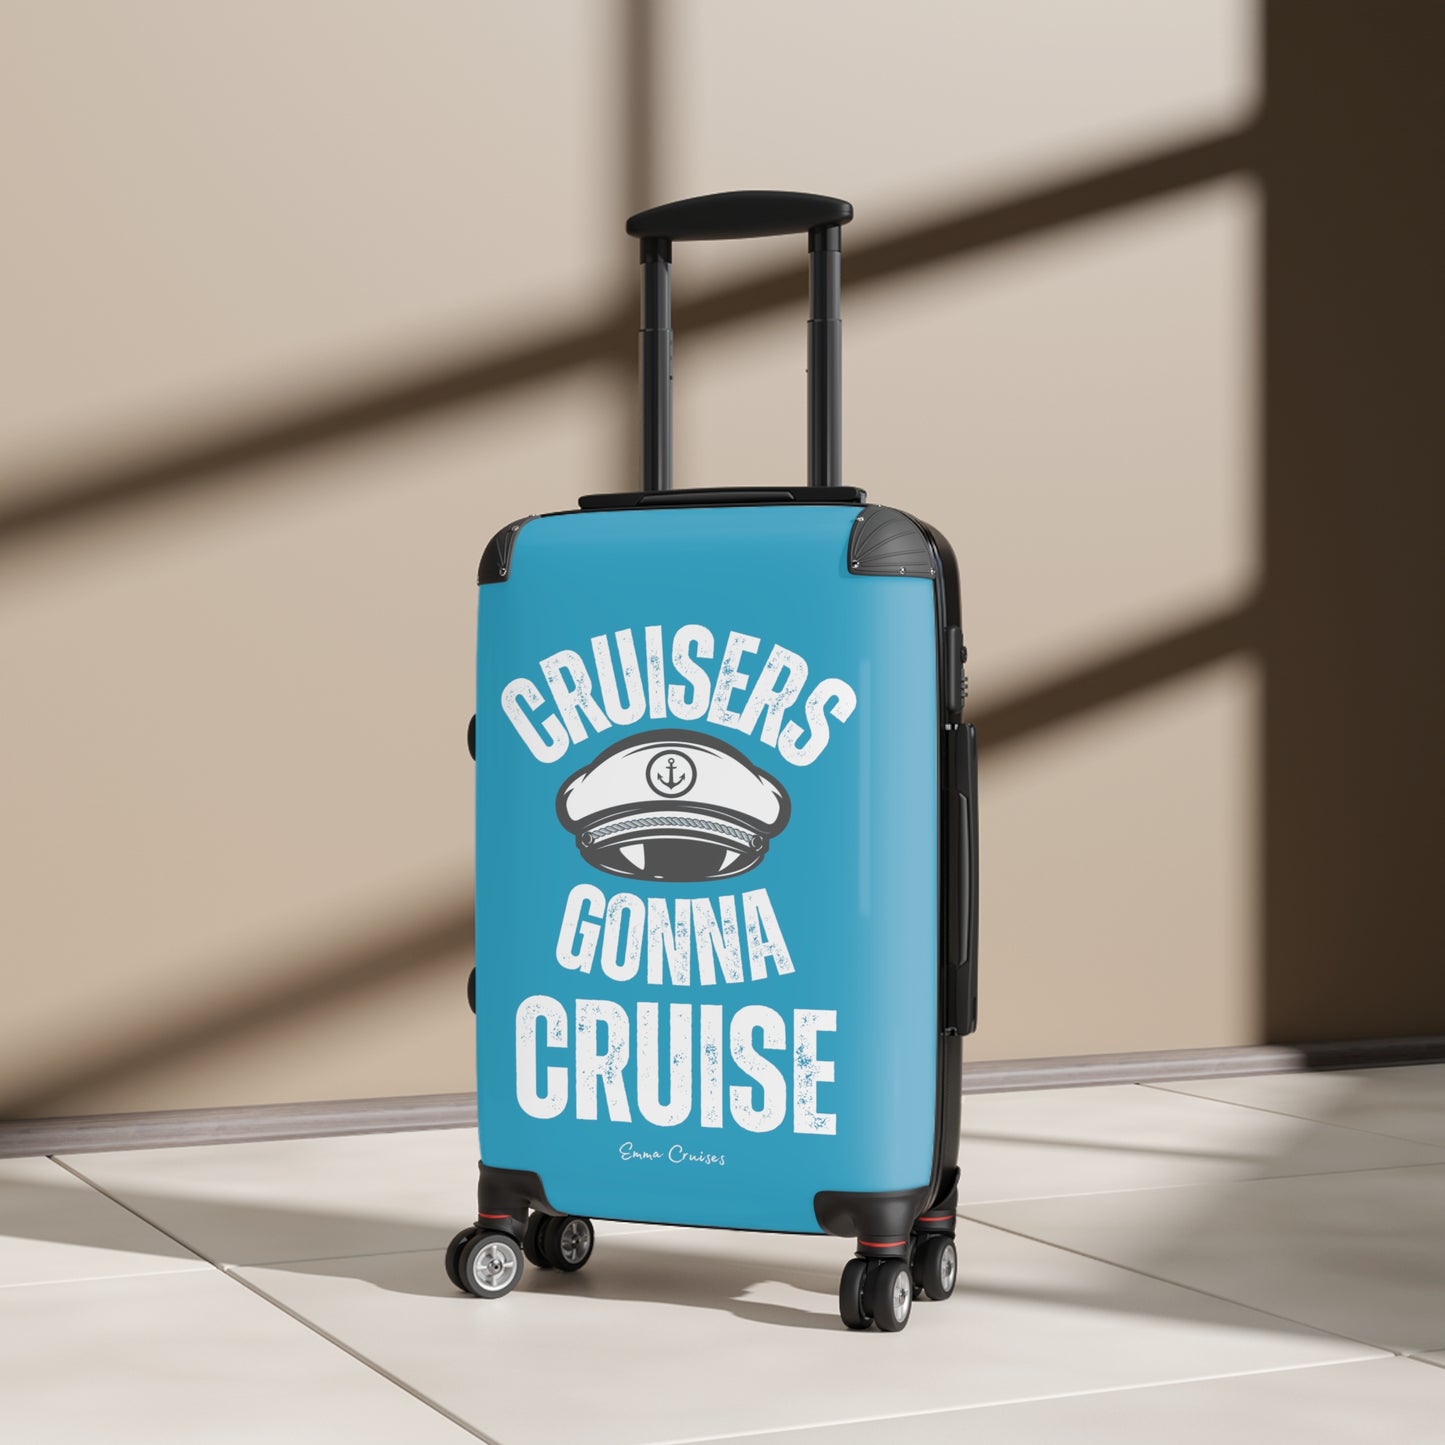 Cruisers Gonna Cruise - Suitcase